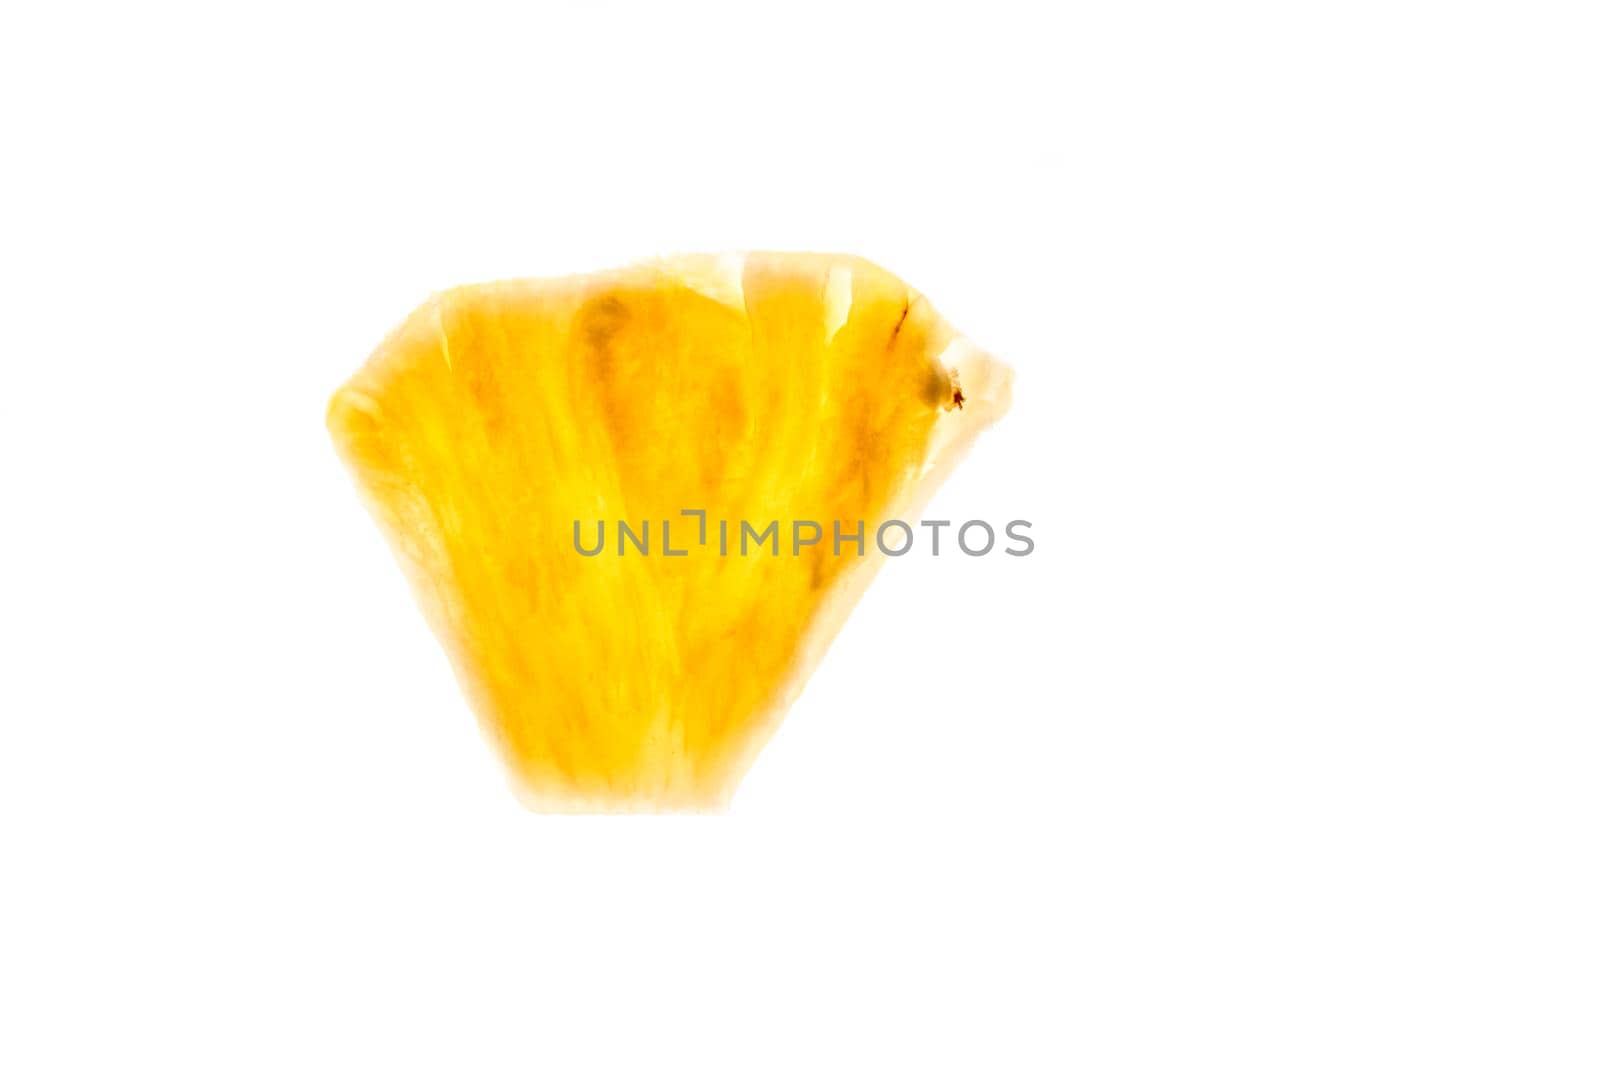 Pineapple chunk isolated on white background by nazarovsergey